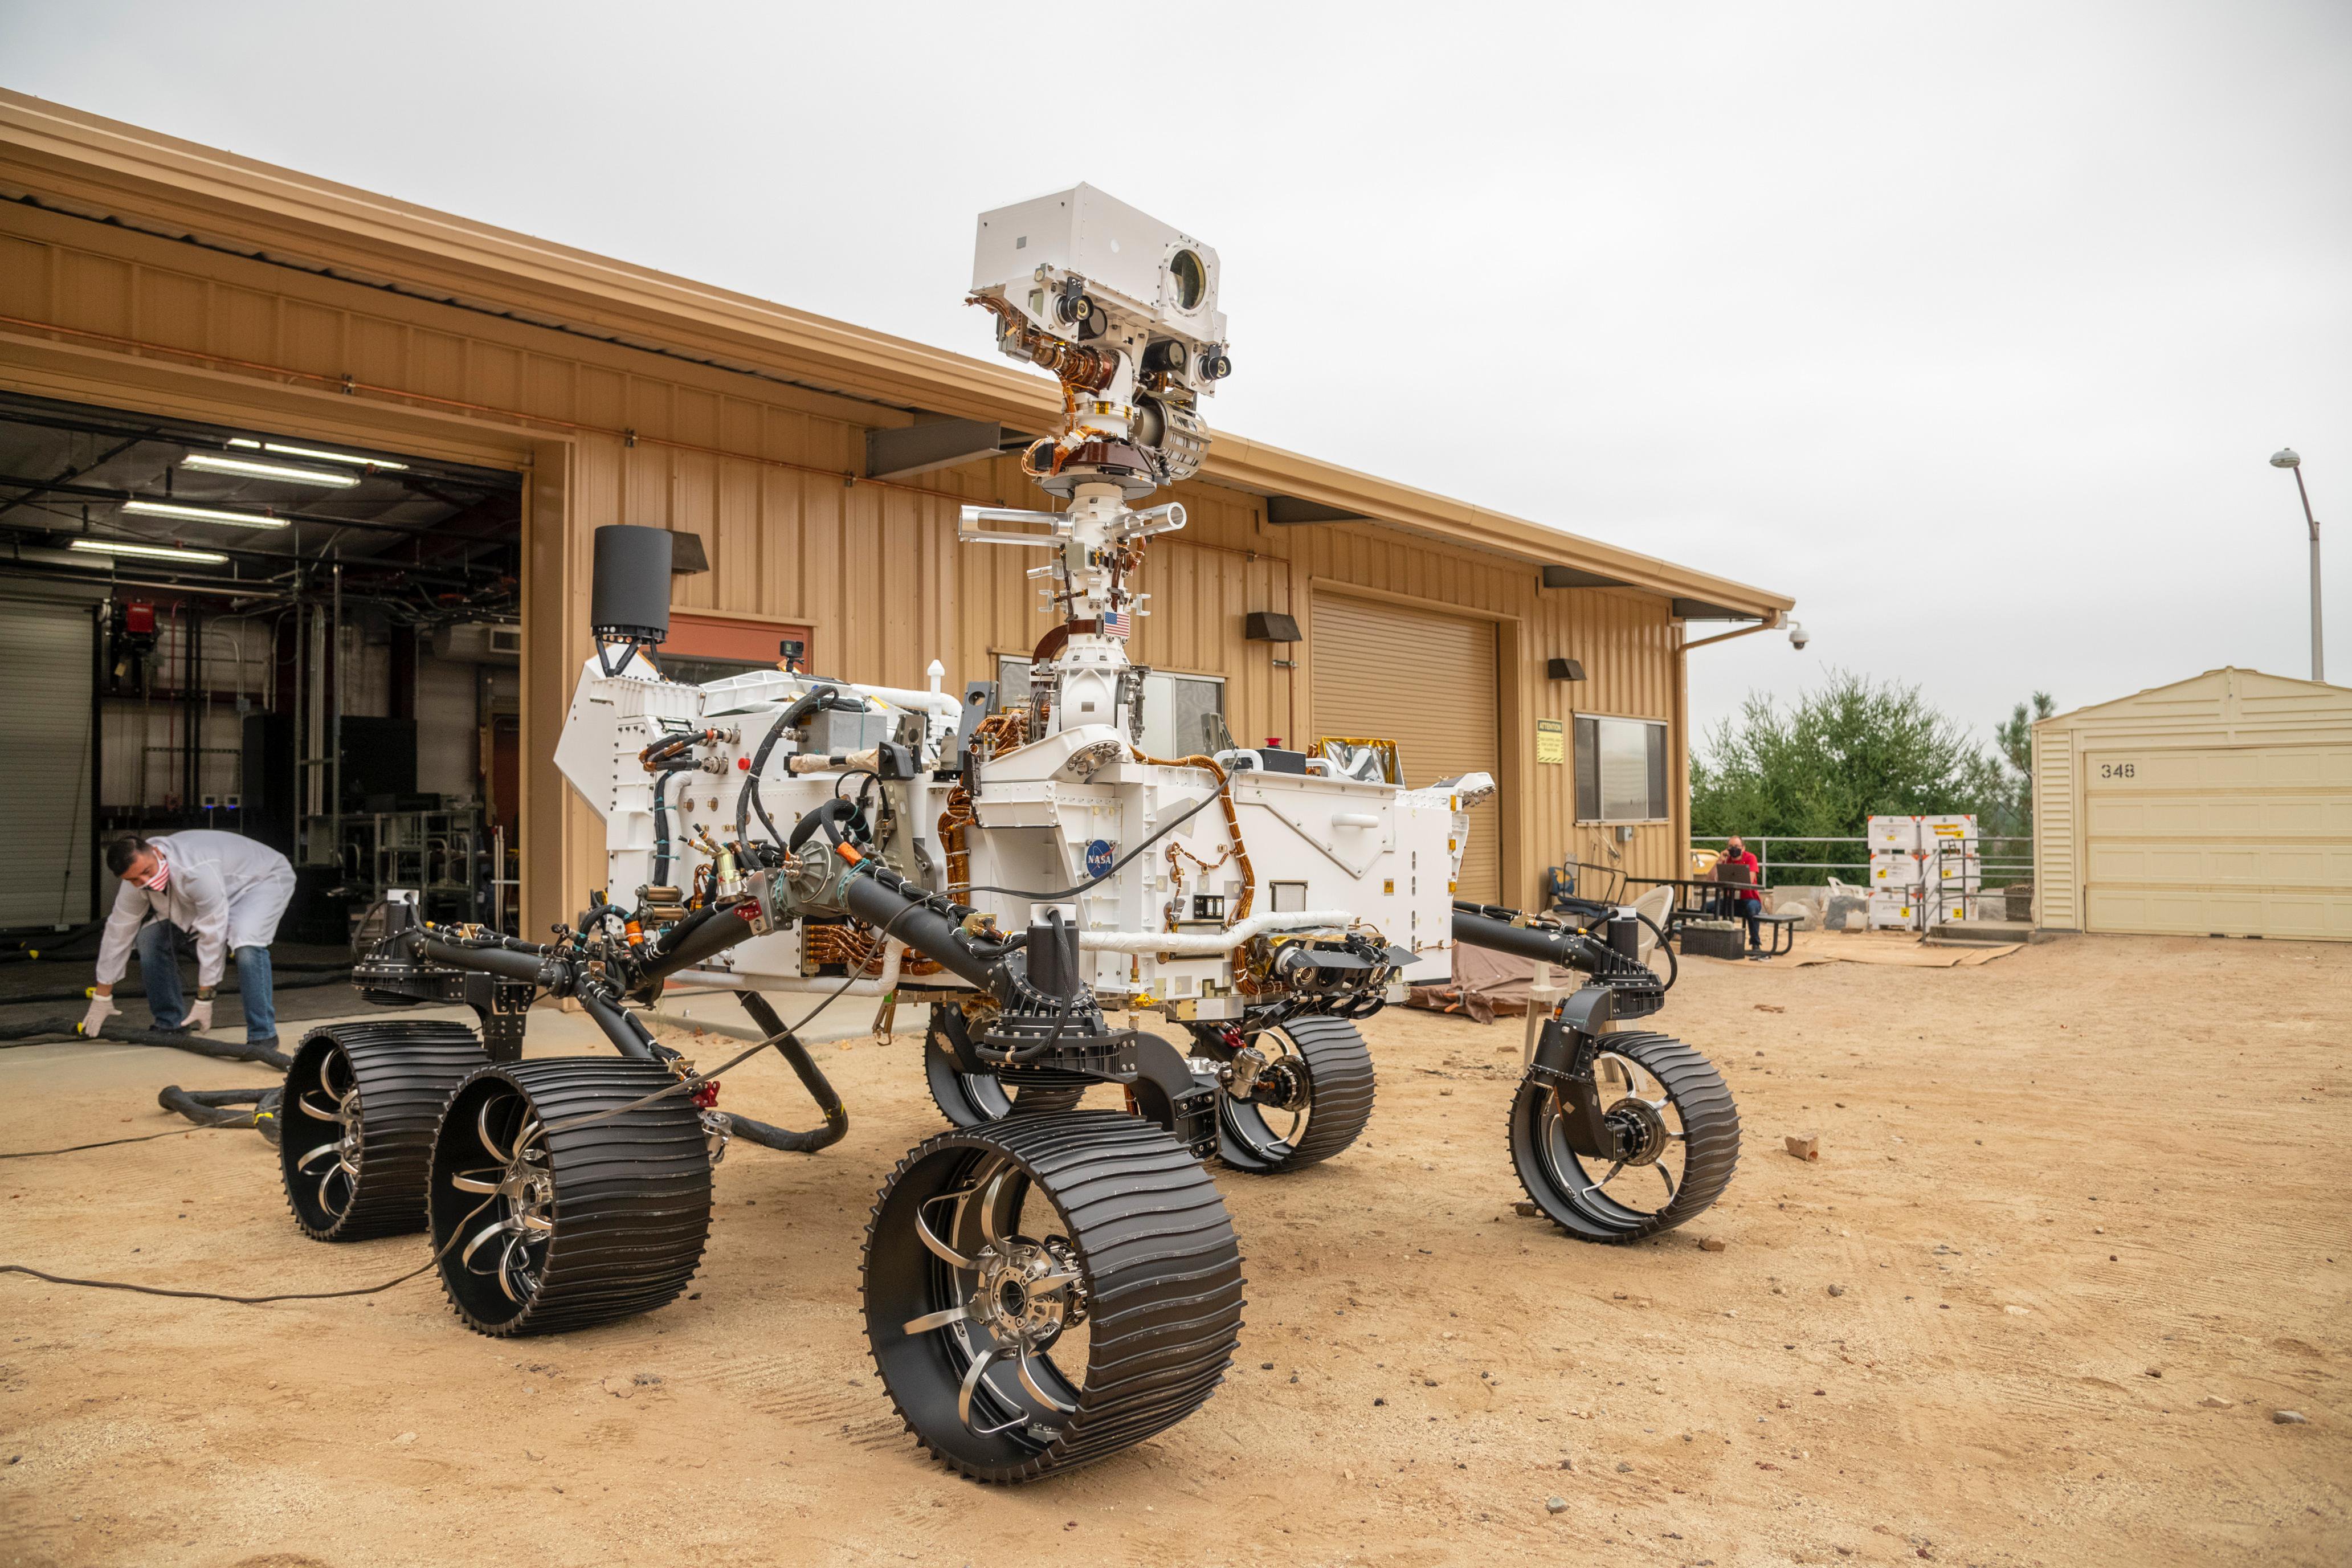 The JPL Mars Yard